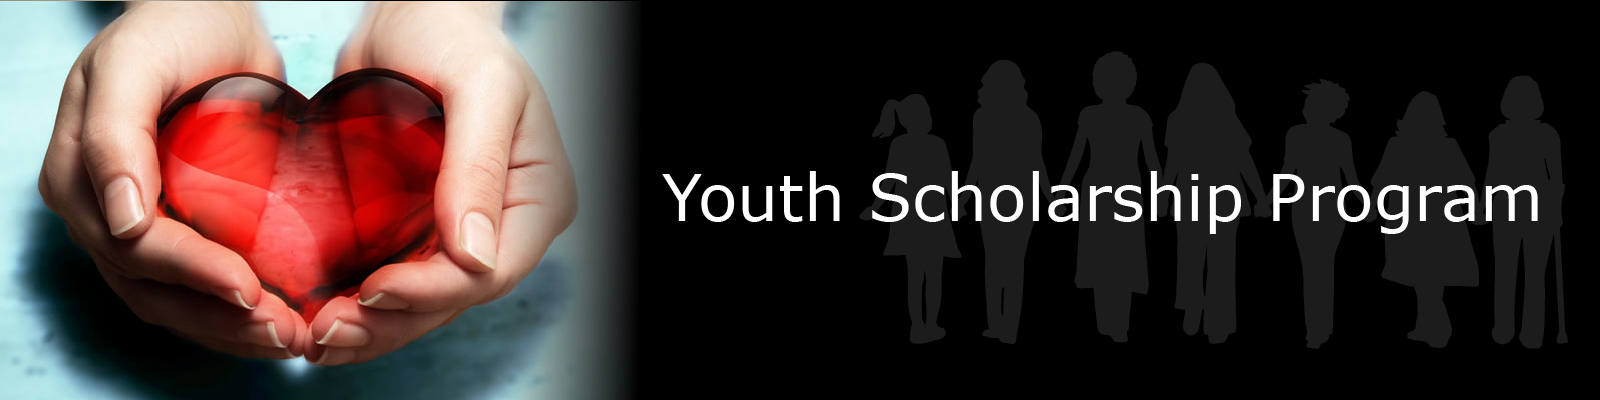 Youth Scholarship Program